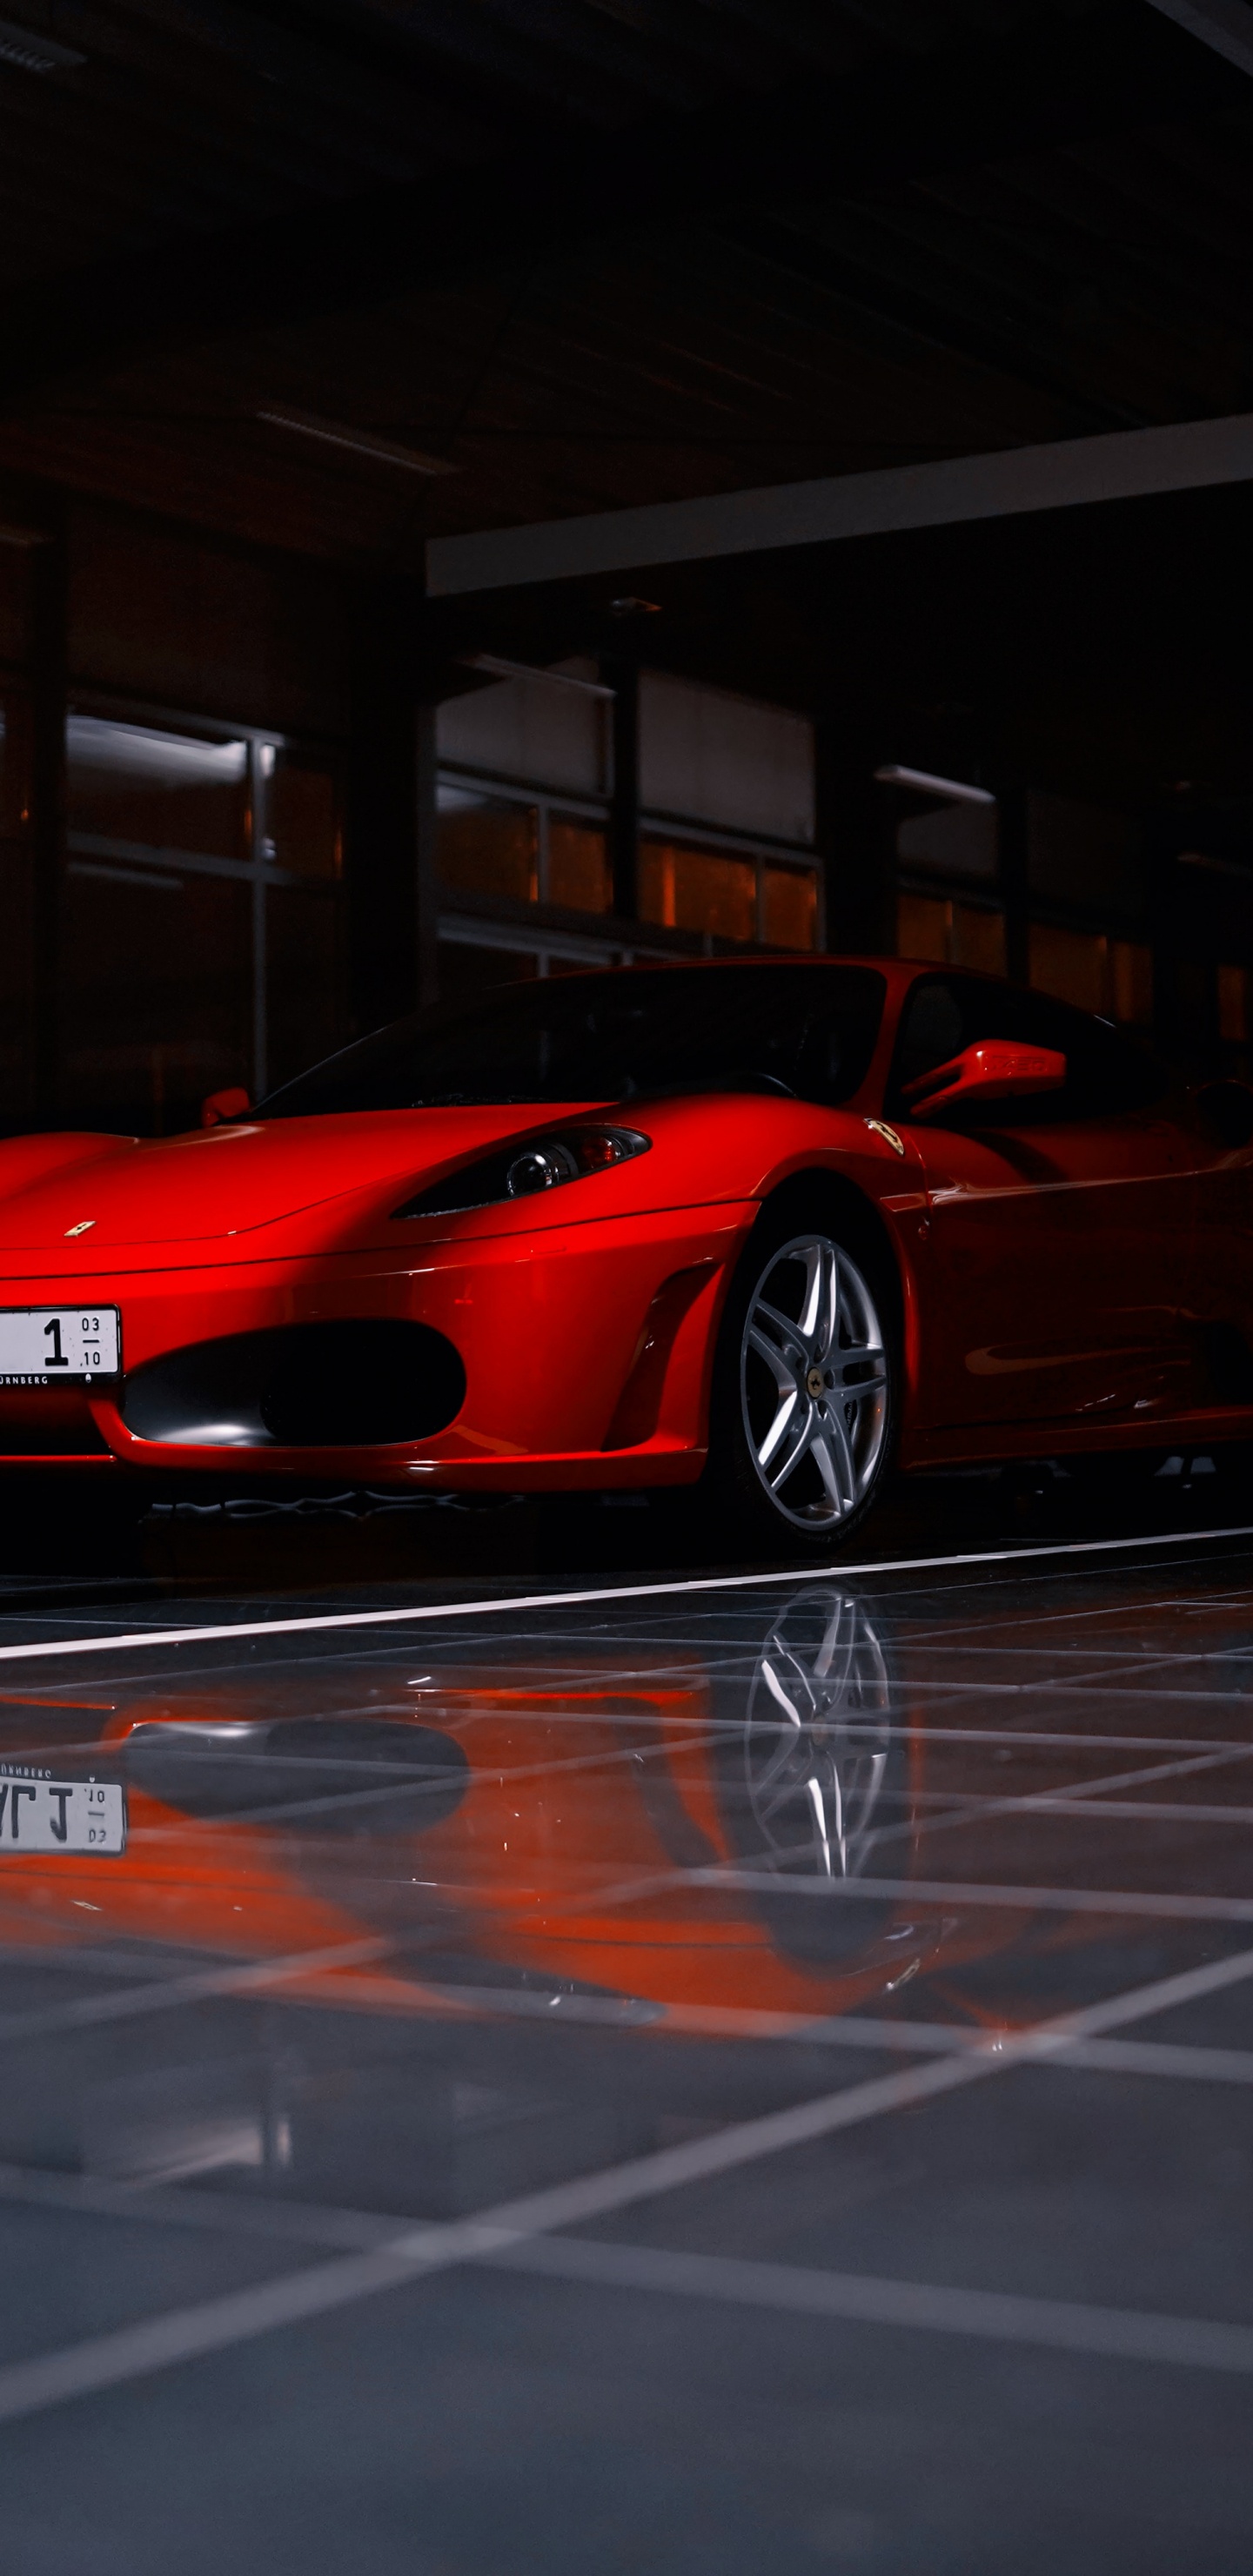 Roter Ferrari 458 Italia Auf Parkplatz Geparkt. Wallpaper in 1440x2960 Resolution